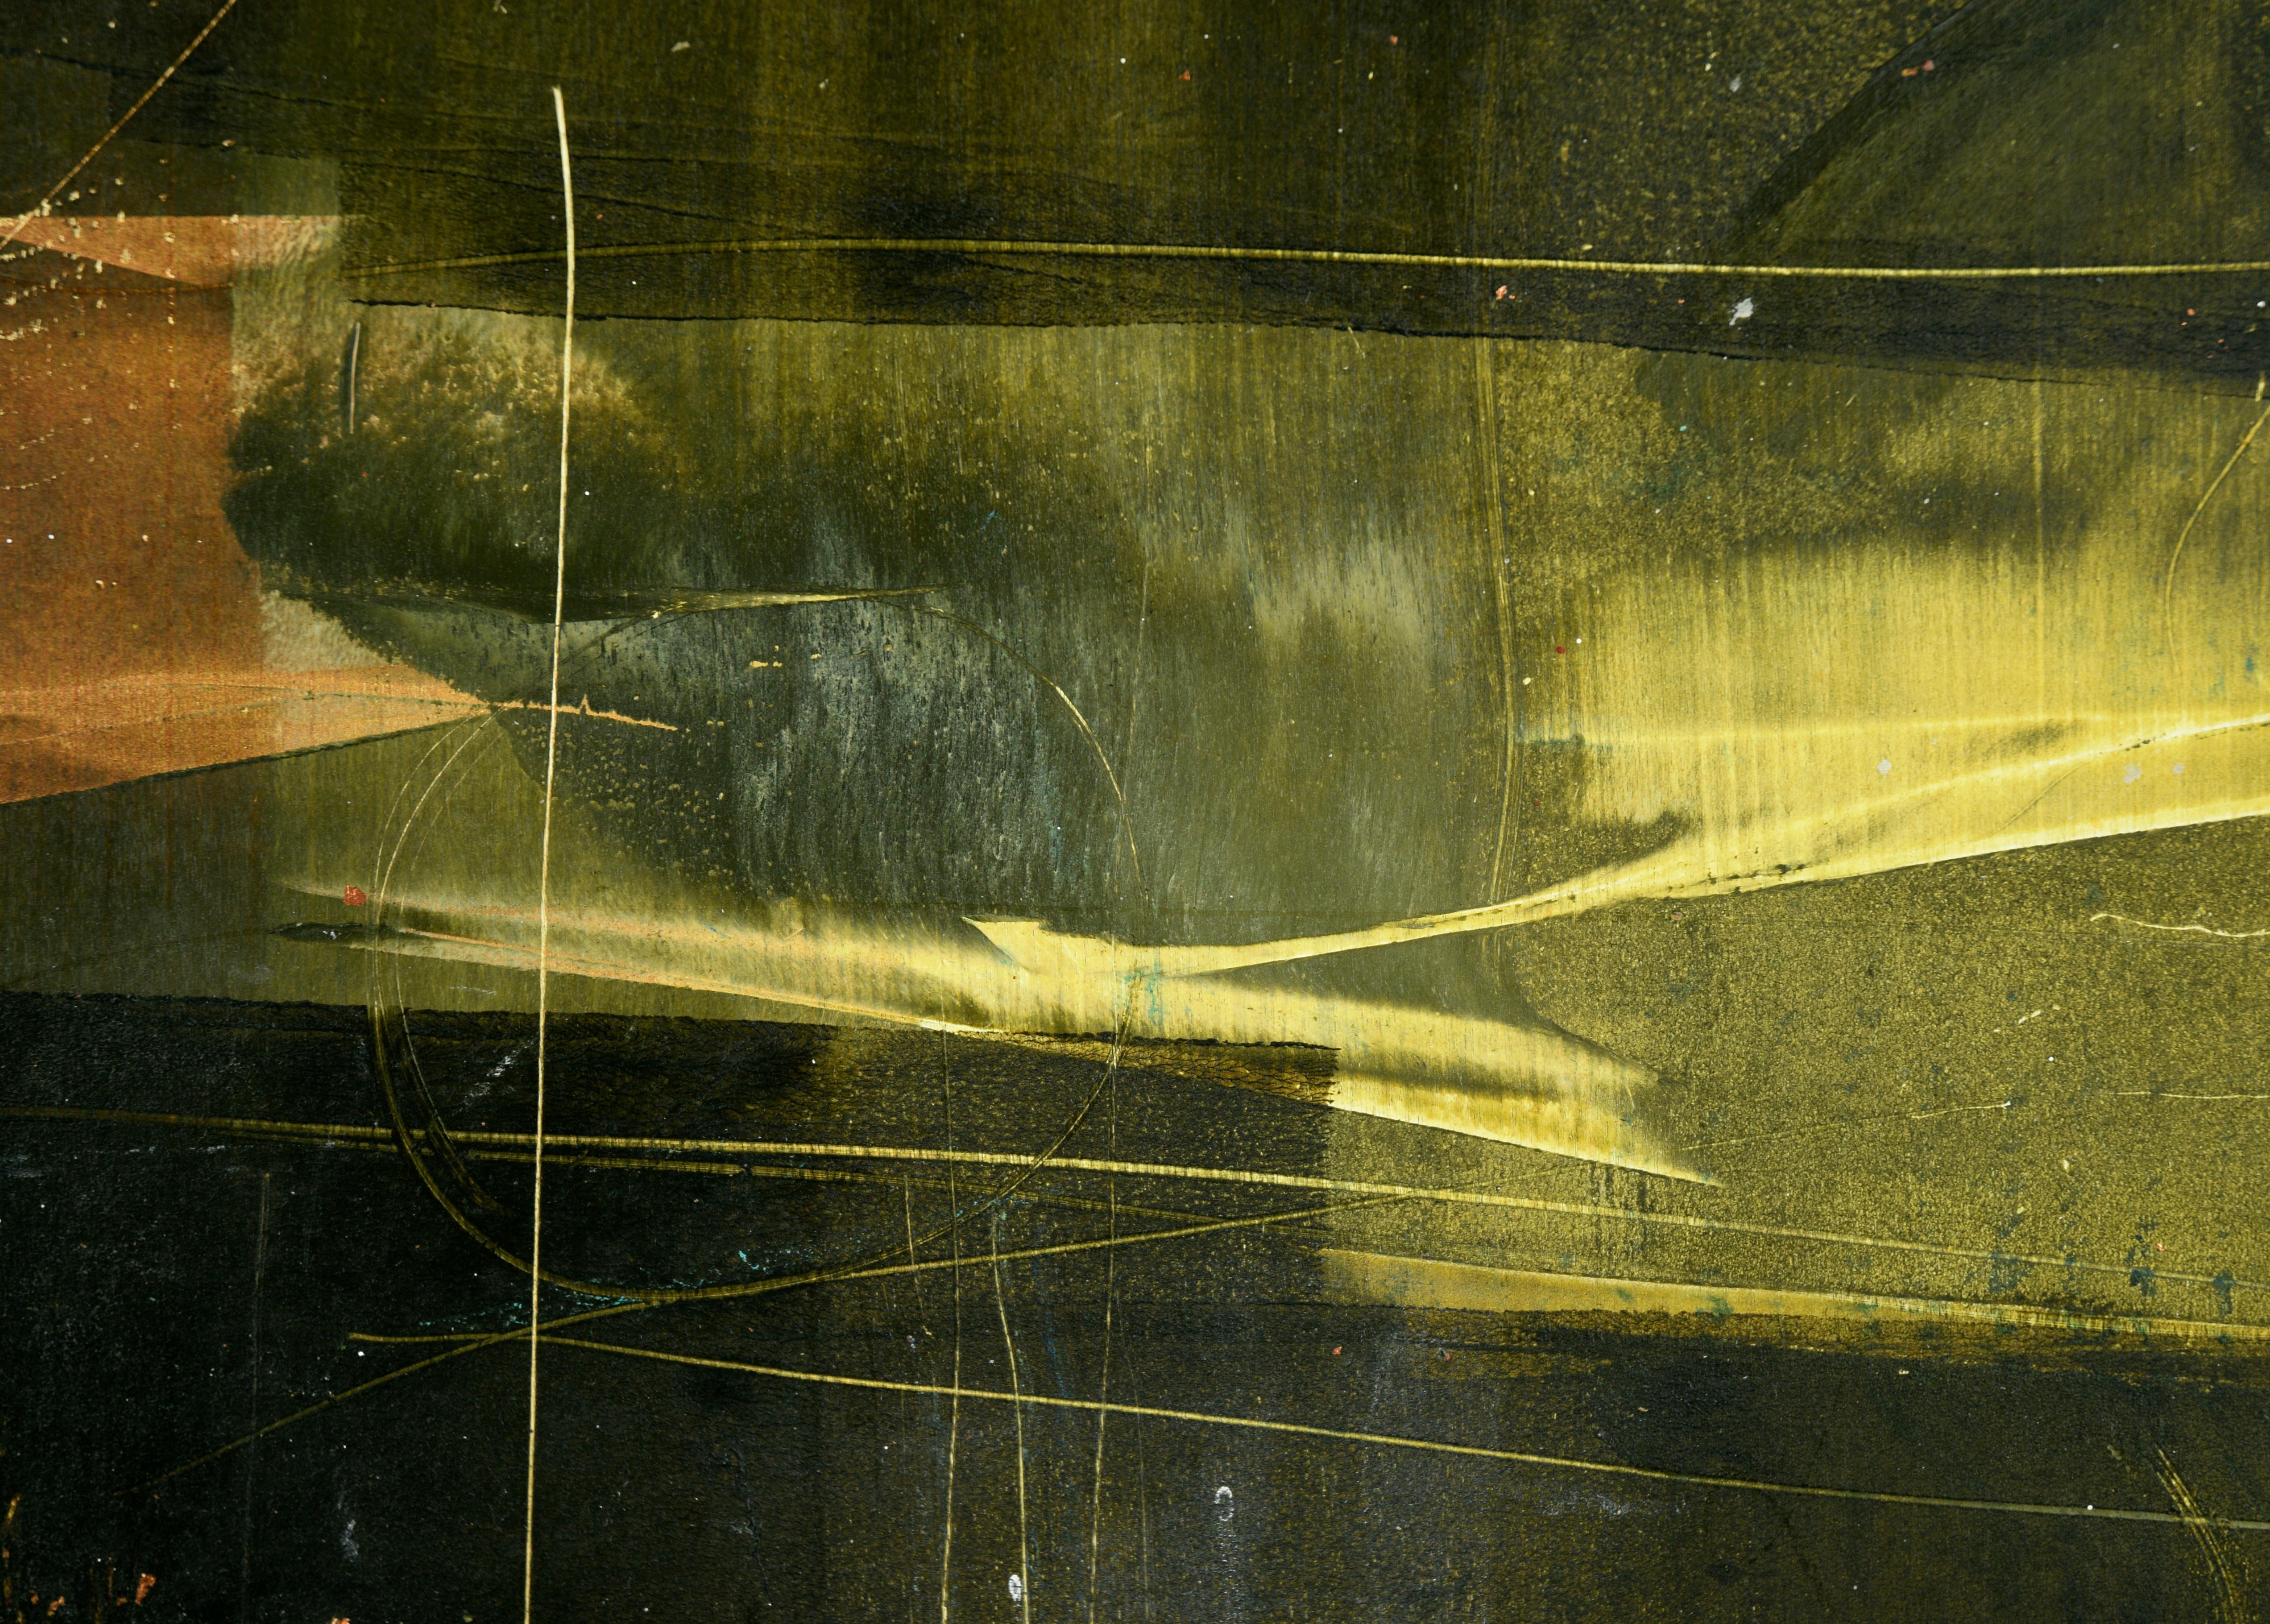 Composition abstraite River 2 en acrylique et feuille d'or sur panneau de bois

Composition abstraite audacieuse de l'artiste californienne Janet Trenchard (américaine, née en 1947). Cette pièce est composée de couches de vert foncé riche et de